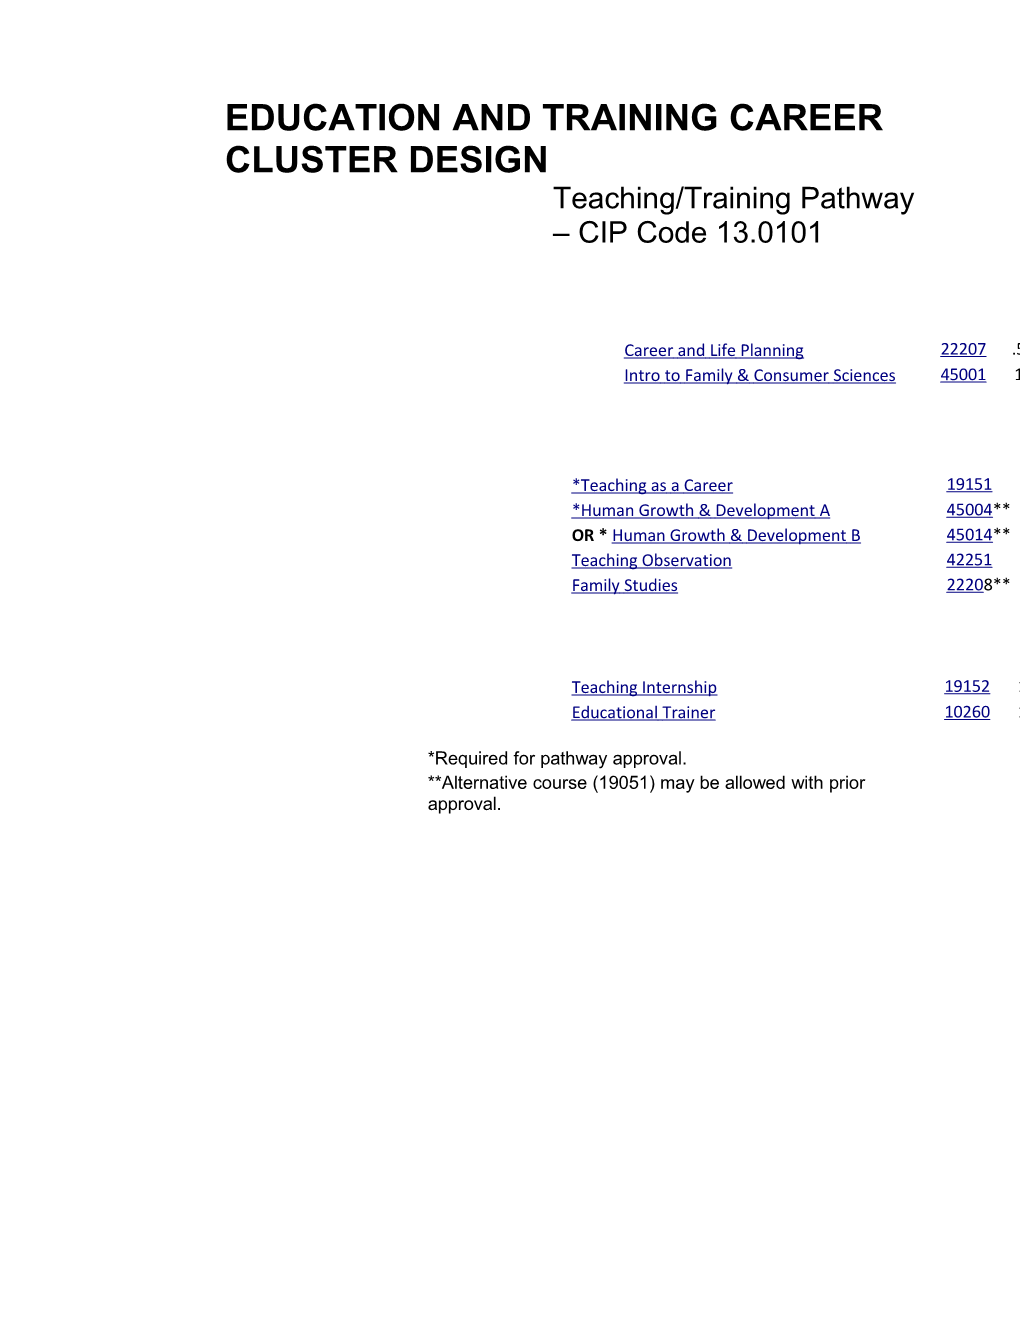 Teaching/Trainingpathway Cipcode 13.0101